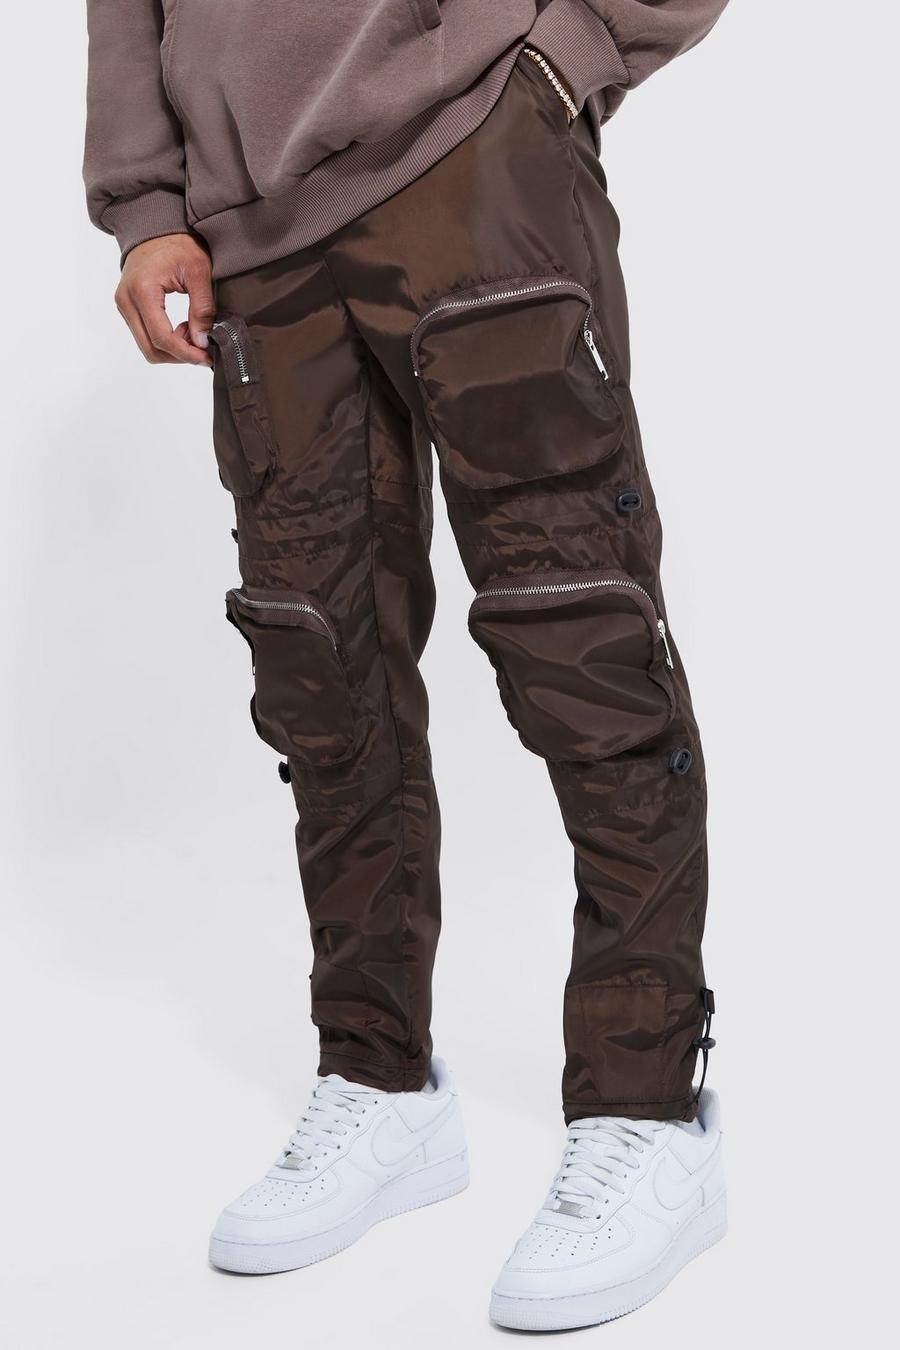 Pantaloni Cargo dritti con vita fissa, tasche multiple e fibbia, Chocolate image number 1